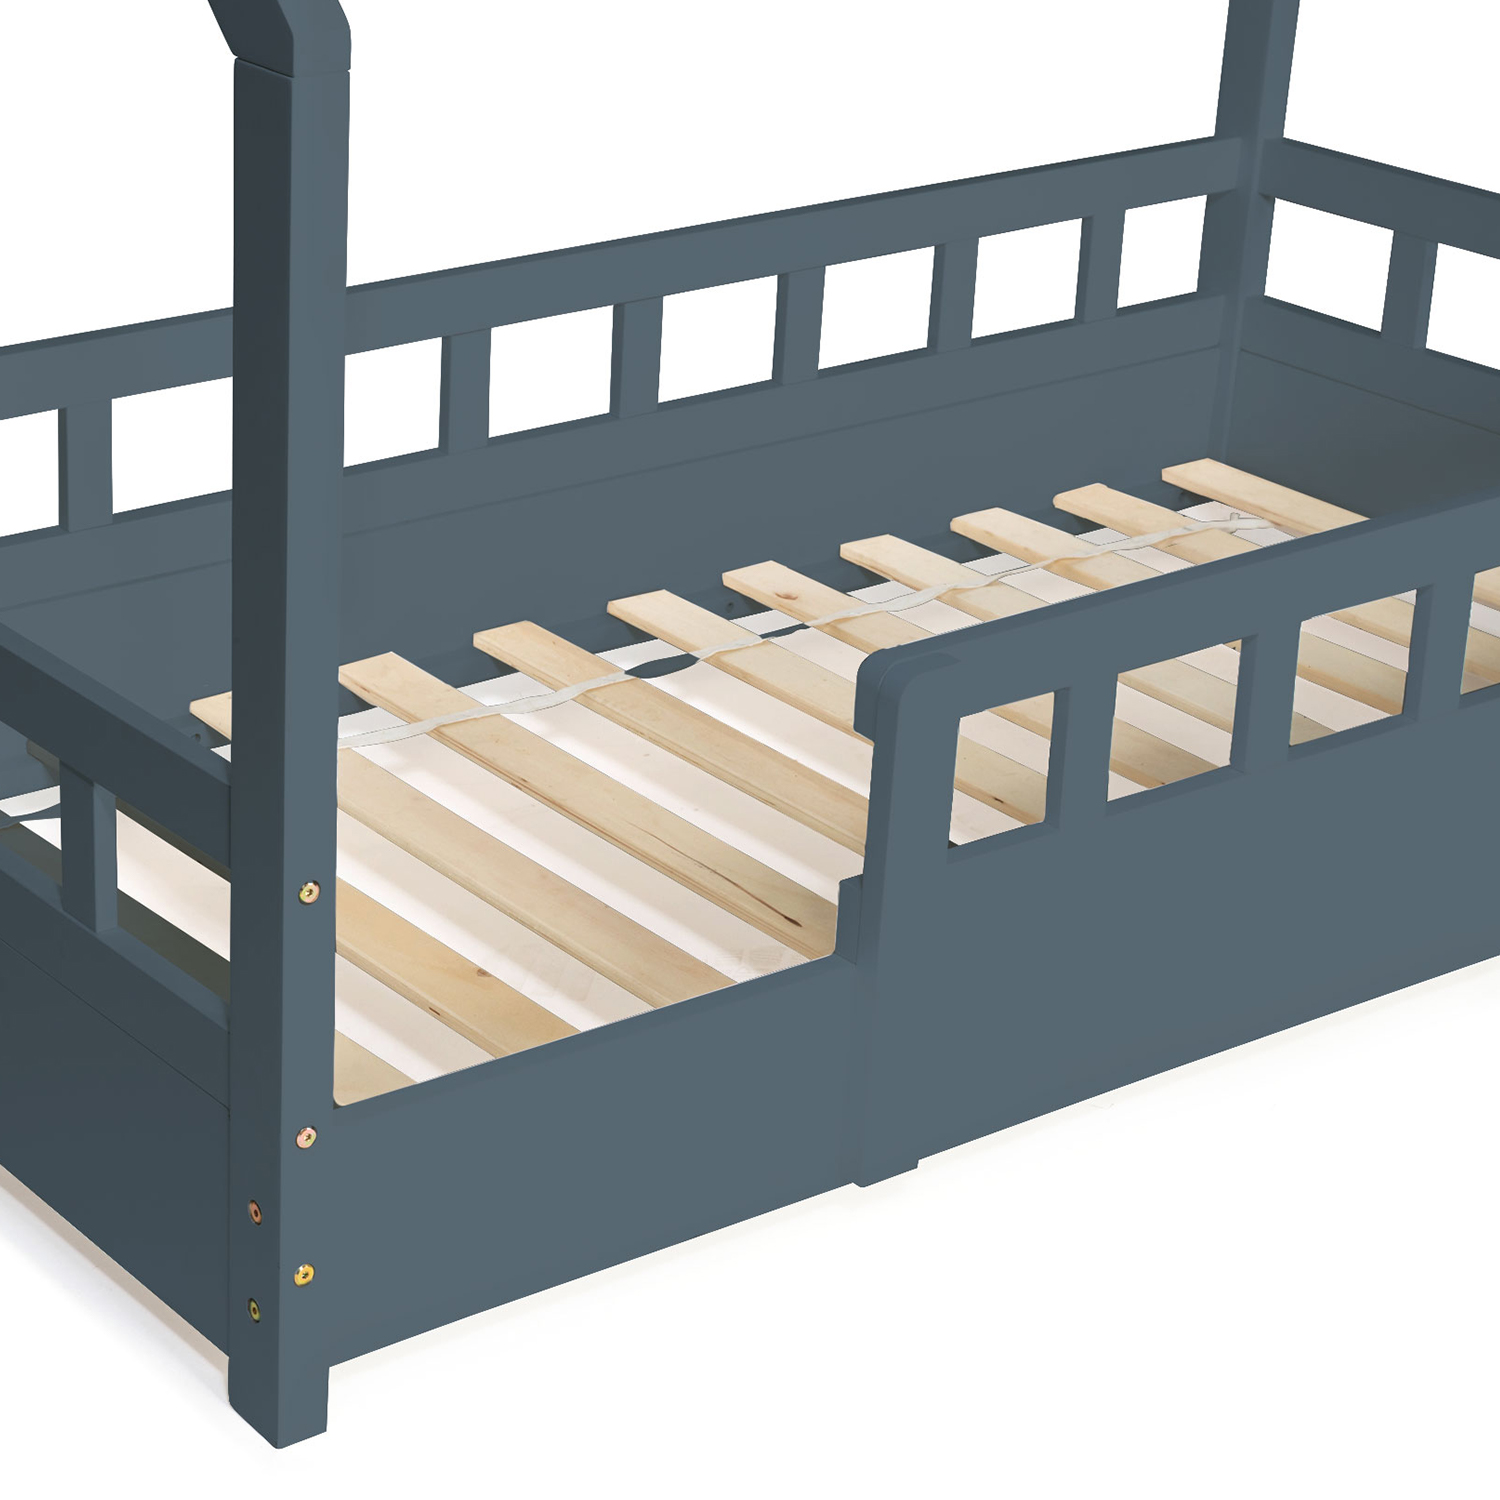 Lit enfant lit cabane en bois 80x160 cm bois